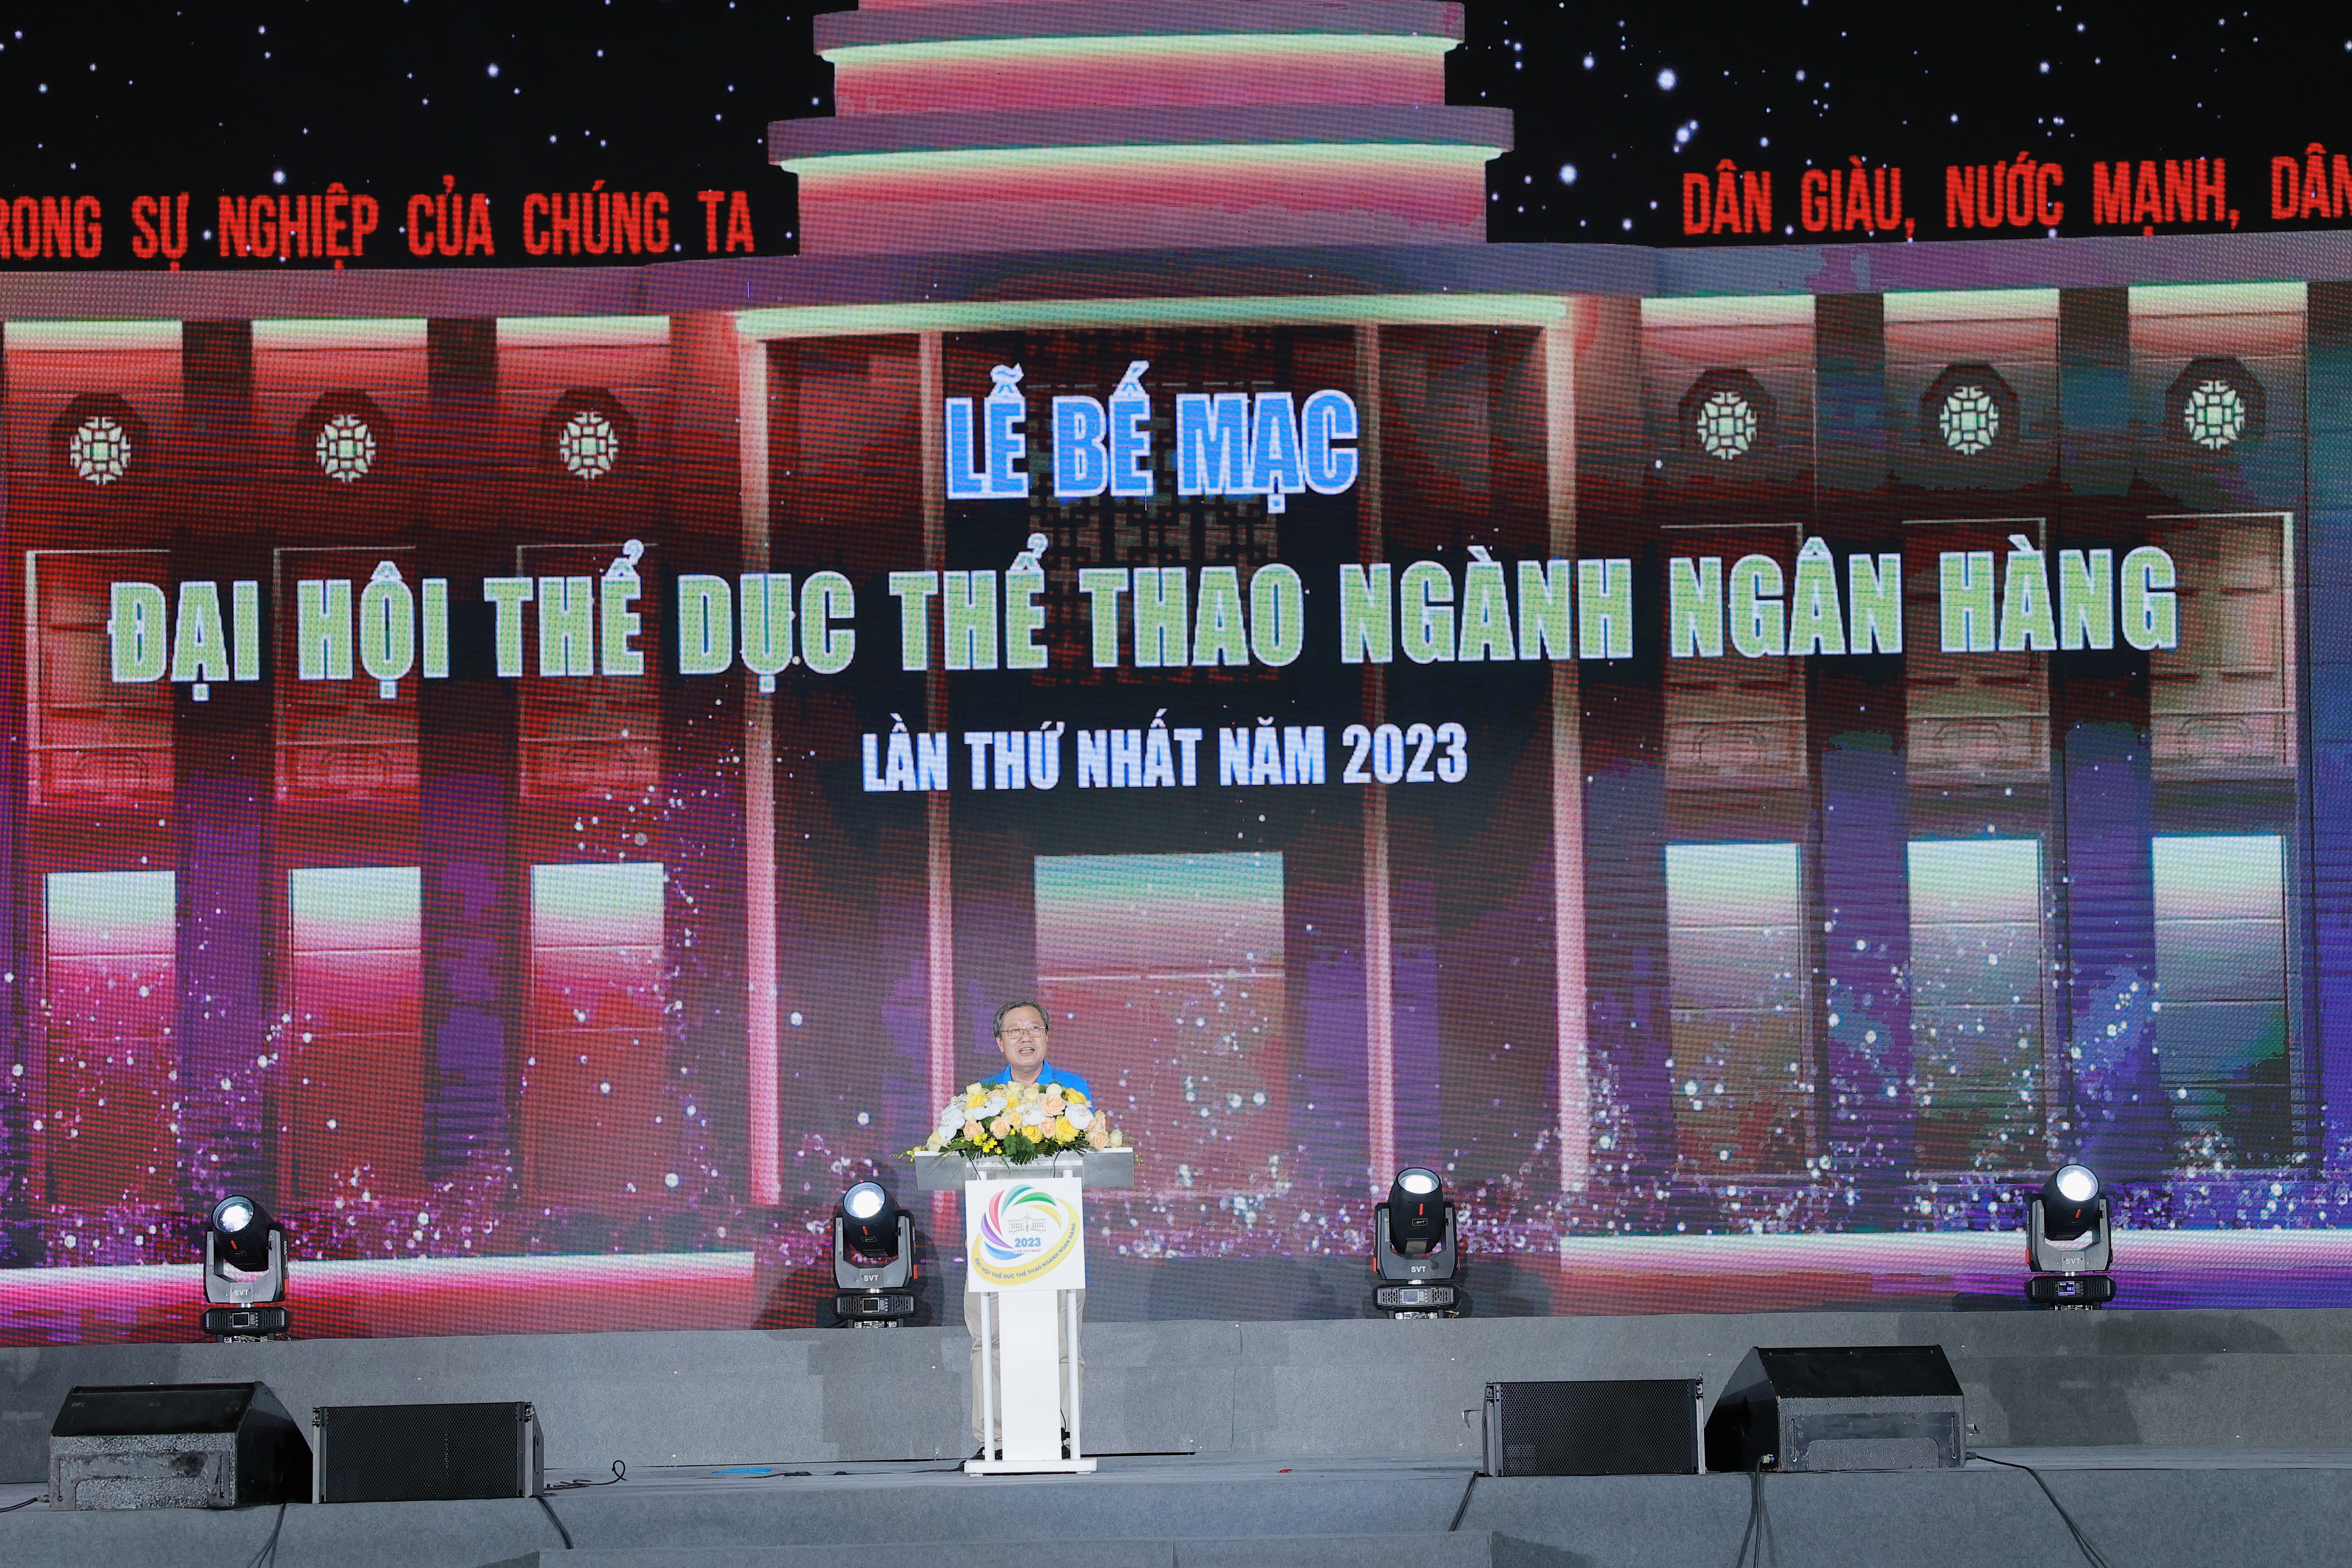 Ông Nguyễn Văn Tân - Phó Chủ Thường trực Công đoàn Ngân hàng Việt Nam, Trưởng Ban tổ chức phát biểu tại Lễ bế mạc